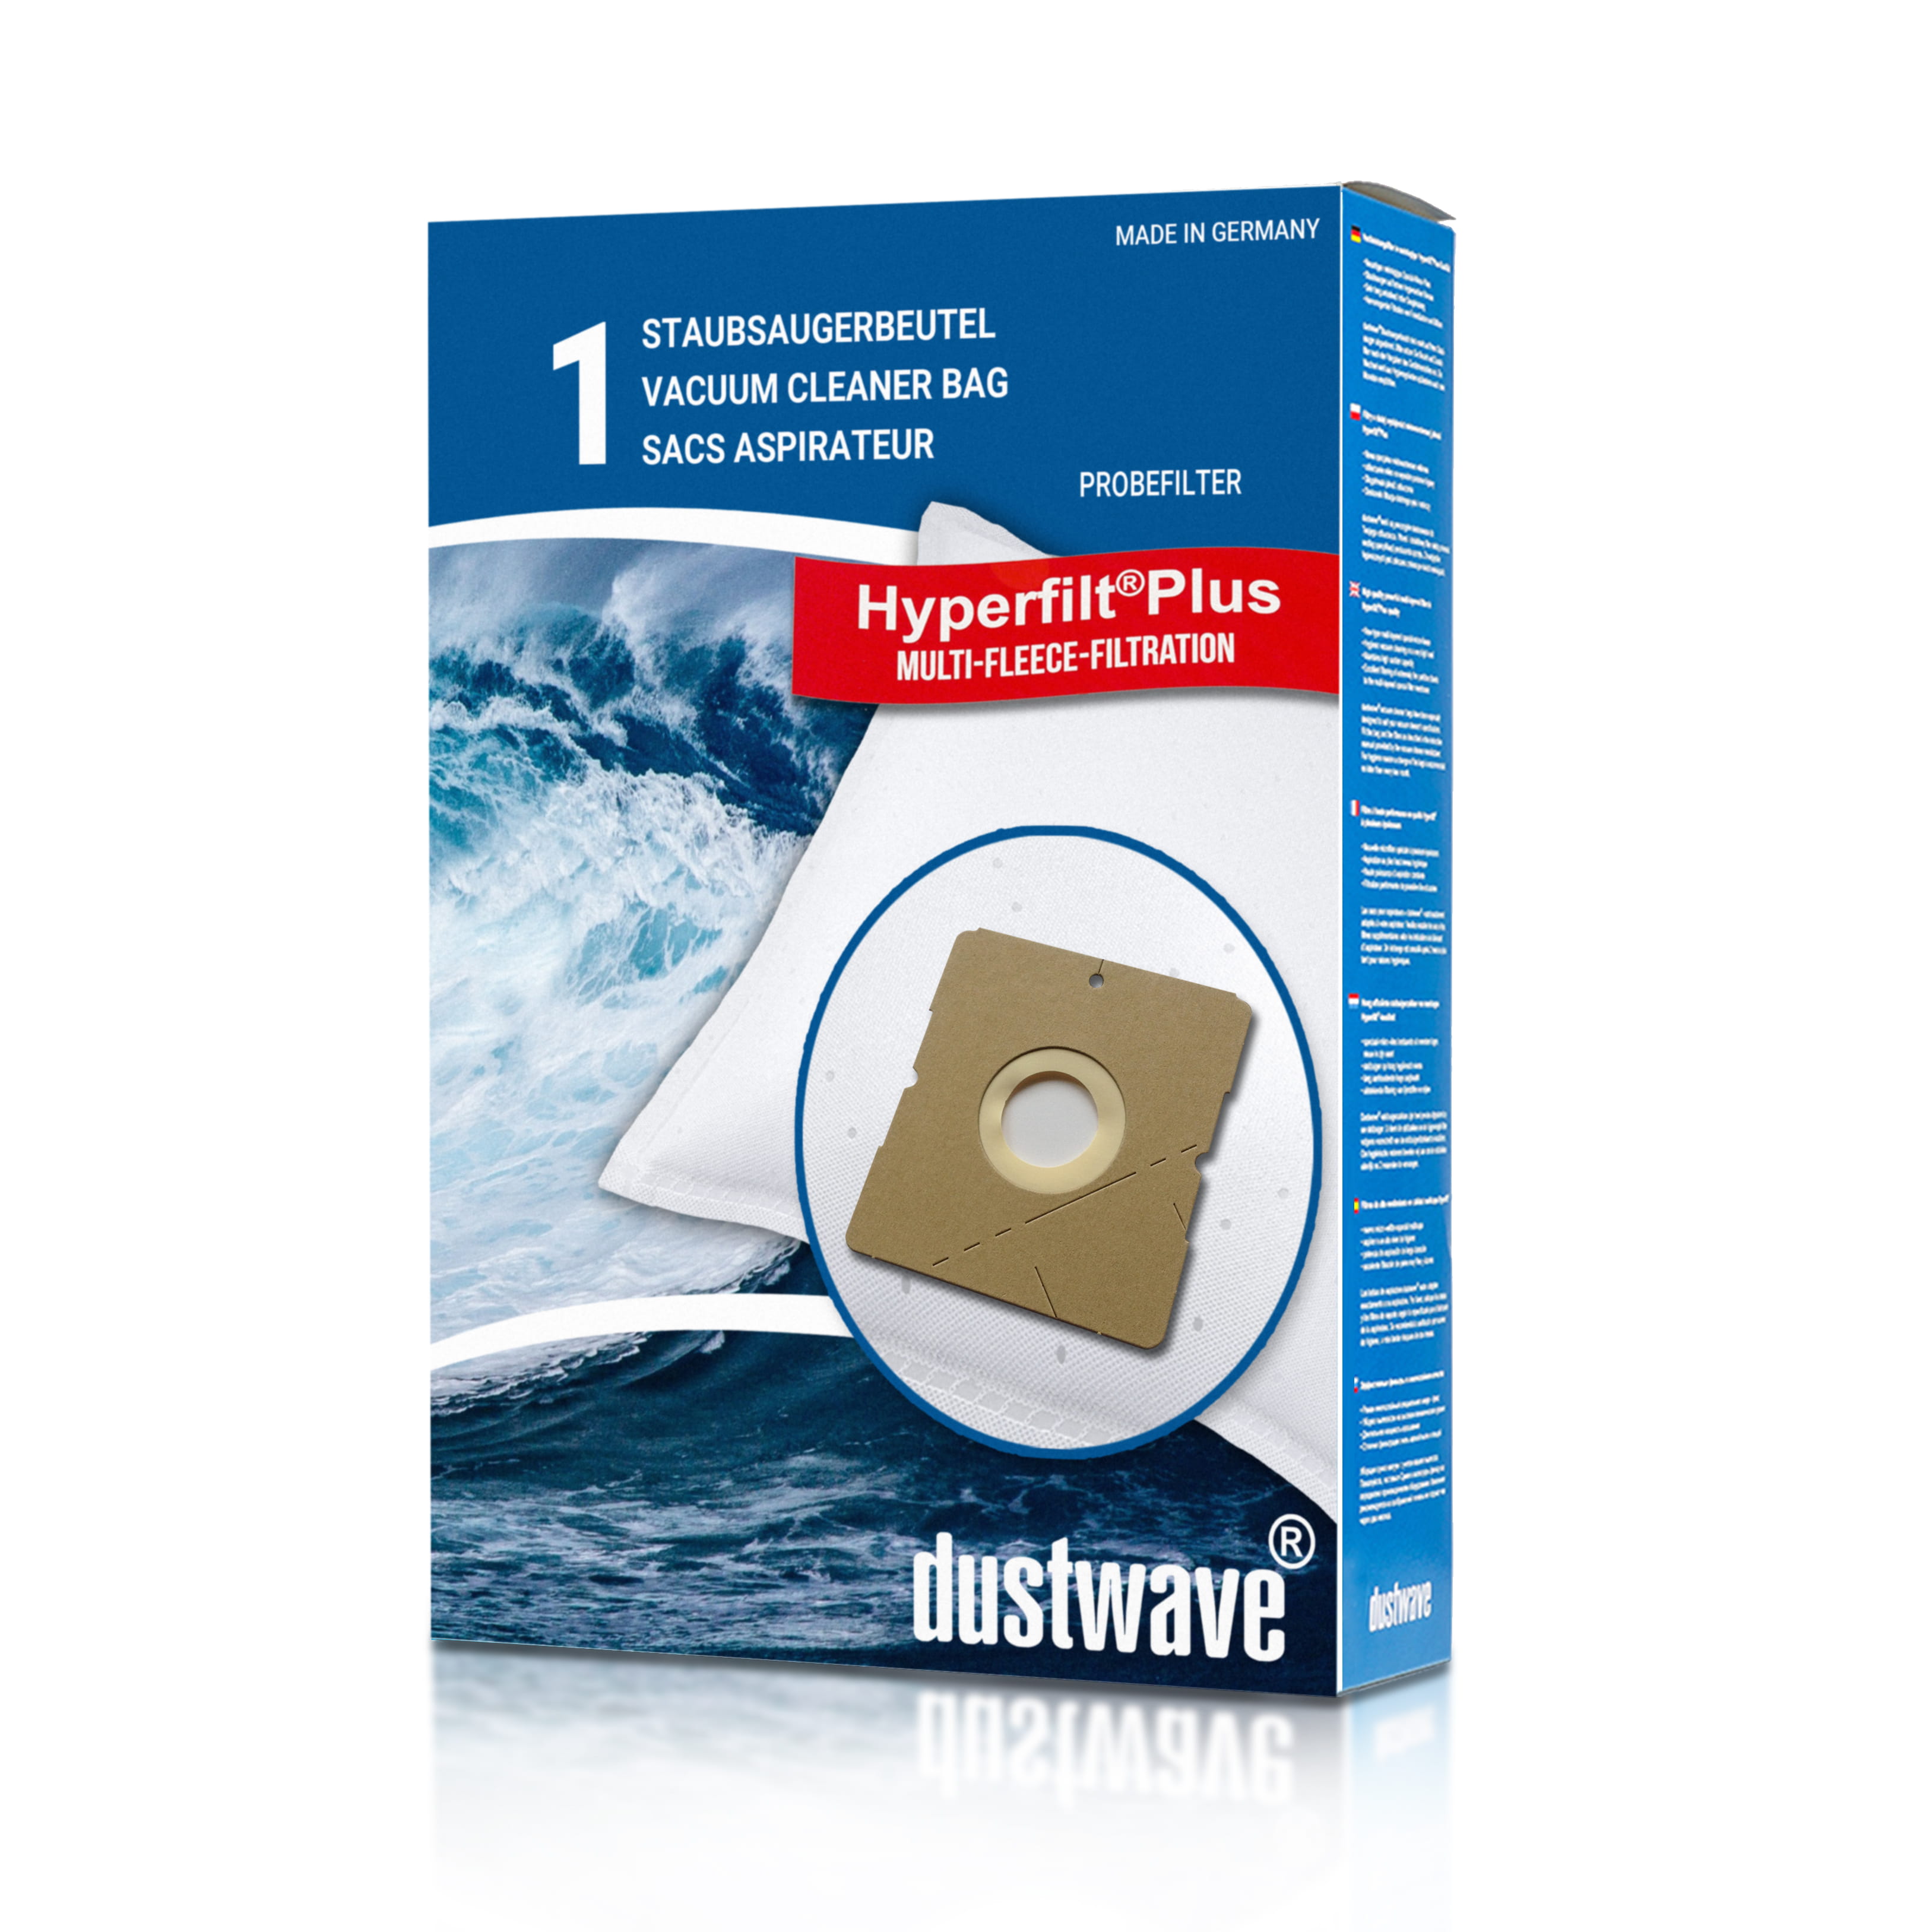 Dustwave® 1 Staubsaugerbeutel für Budget TVC 2400 - hocheffizient, mehrlagiges Mikrovlies mit Hygieneverschluss - Made in Germany